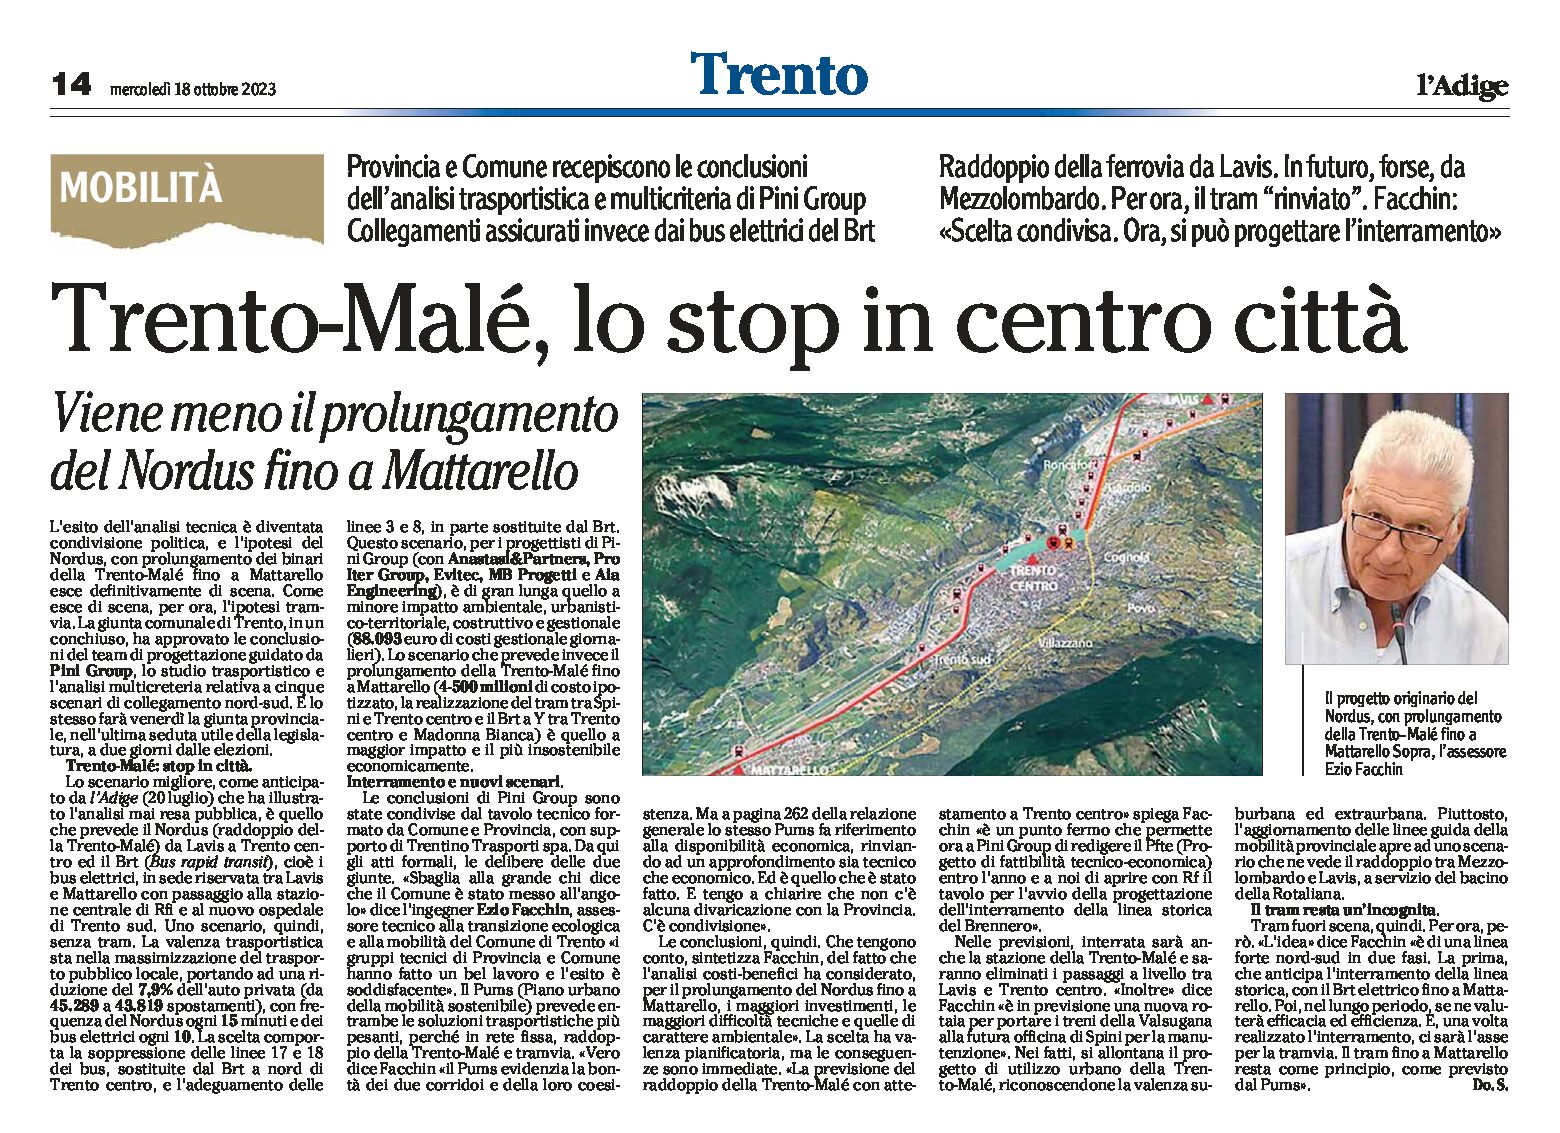 Trento, mobilità: Trento-Malè, lo stop in centro città